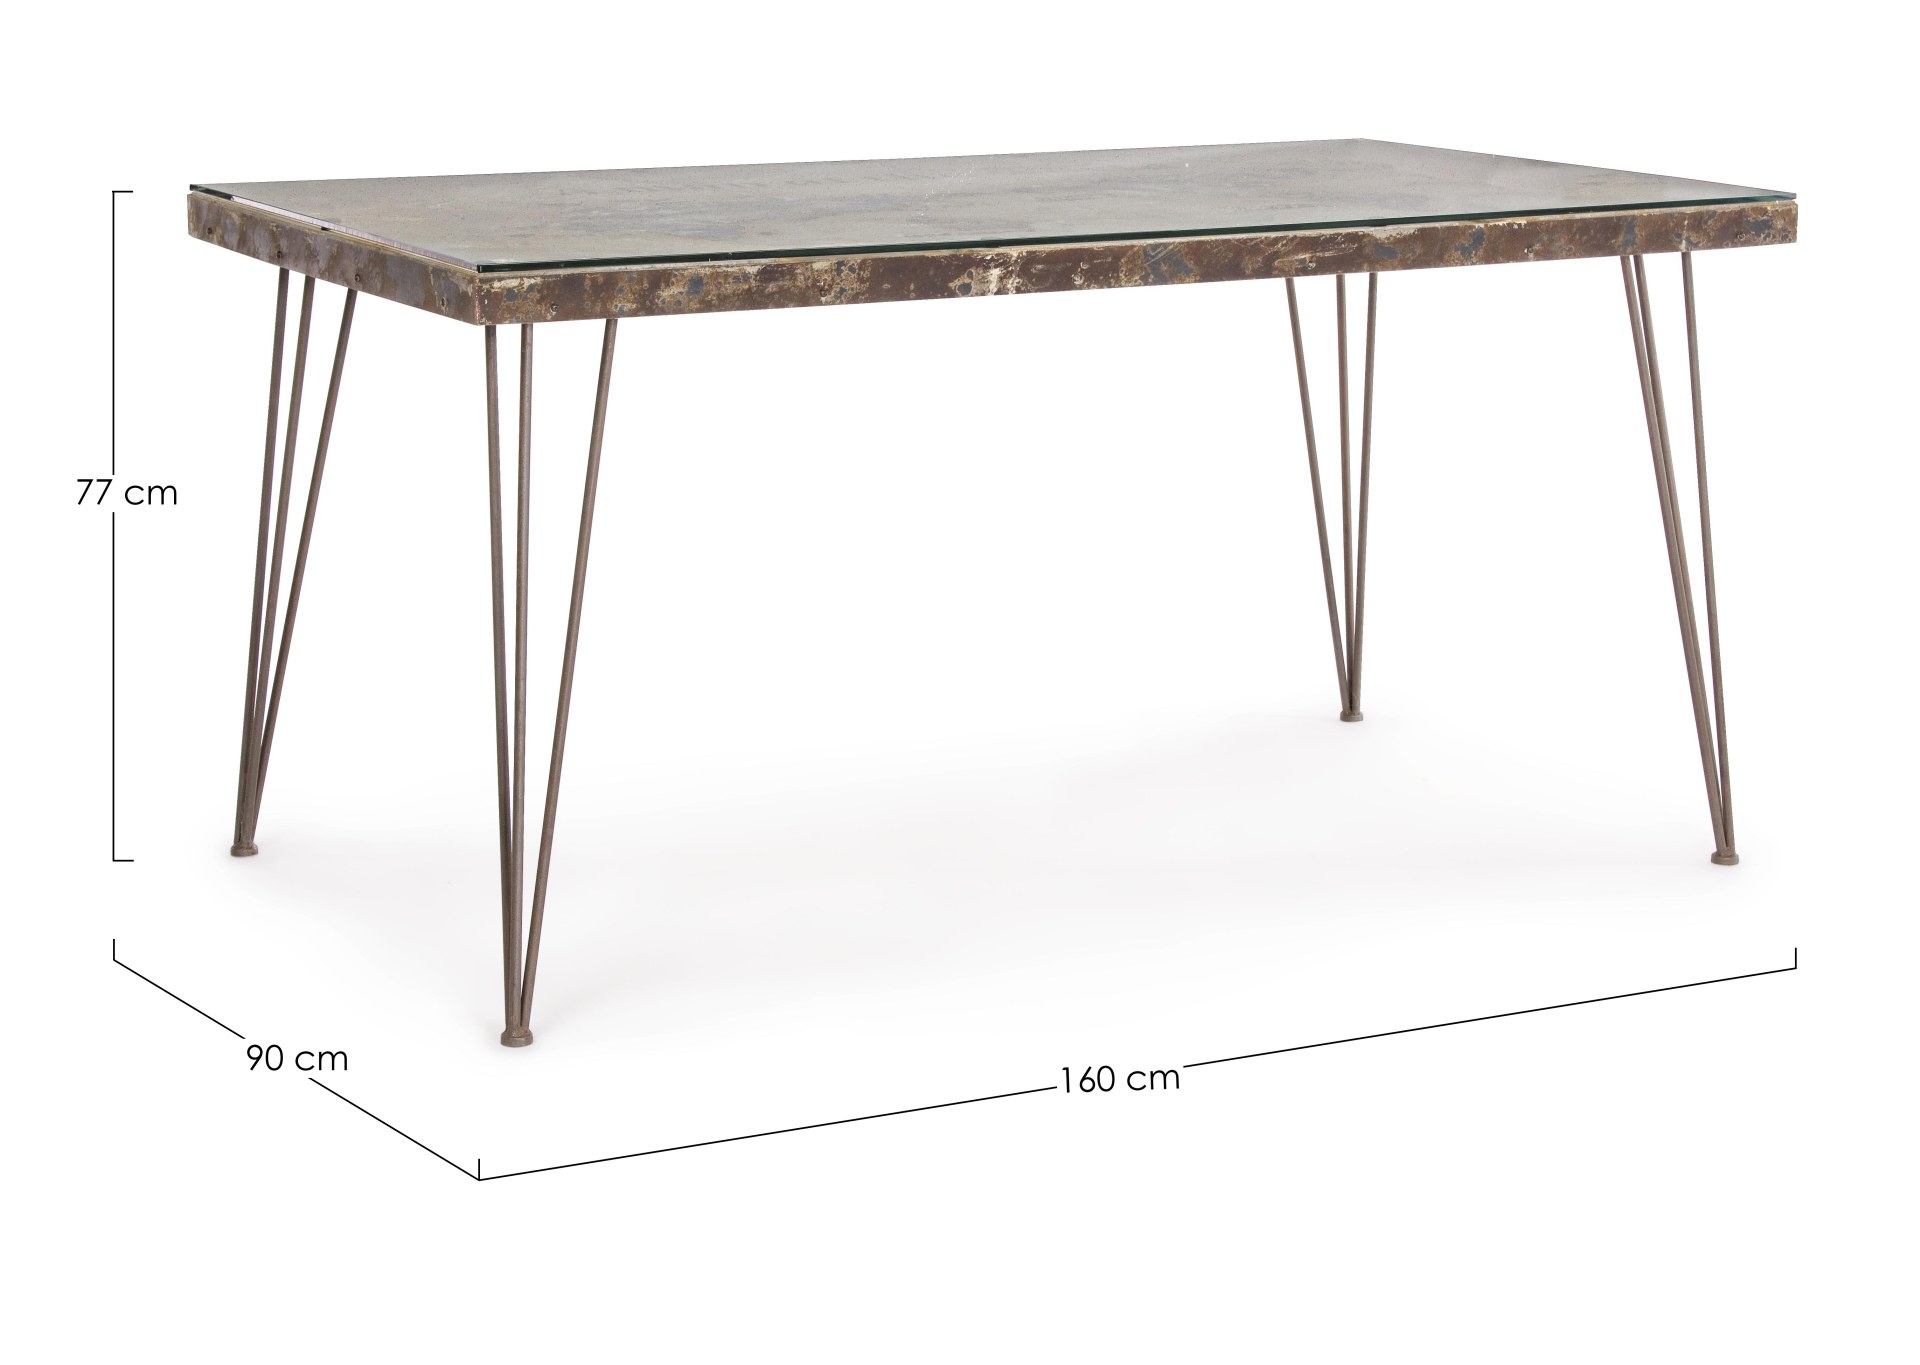 Der Esstisch Atlantide überzeugt mit seinem industriellem Design. Gefertigt wurde er aus MDF, welches einen bronze Farbton besitzt. Das Gestell des Tisches ist aus Metall und ist in einer bronze Farbe. Der Tisch besitzt eine Breite von 160 cm und verfügt 